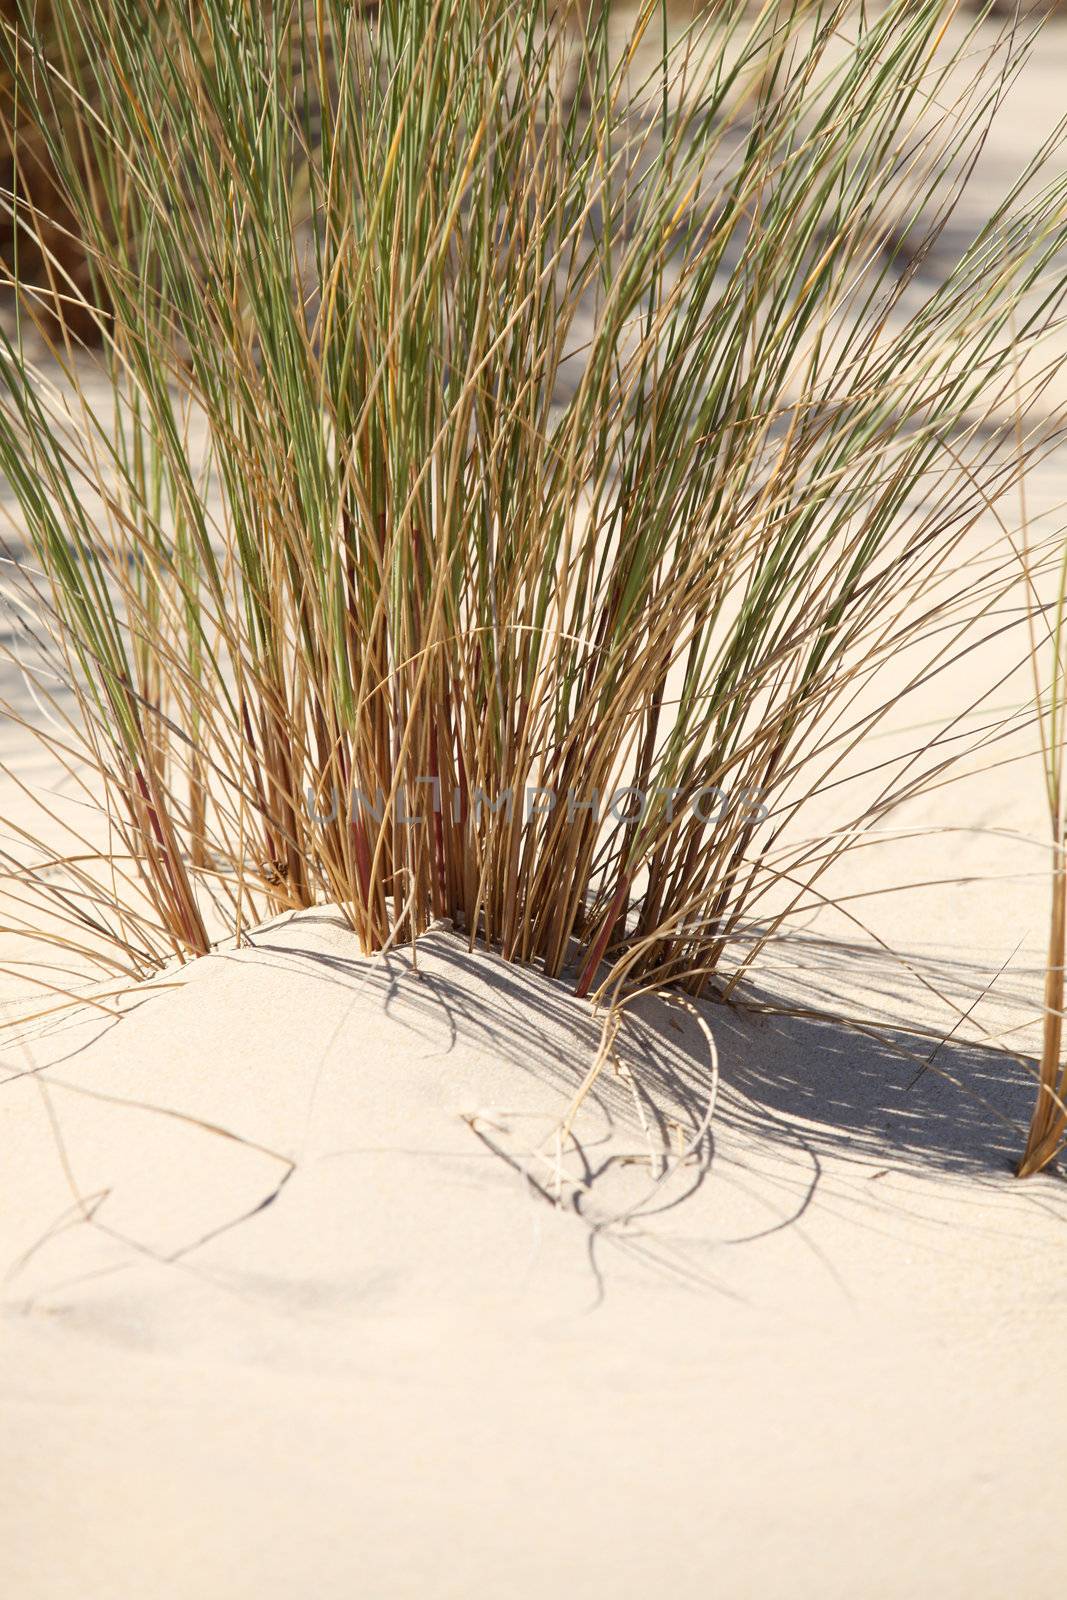 Reeds on a beach by phovoir